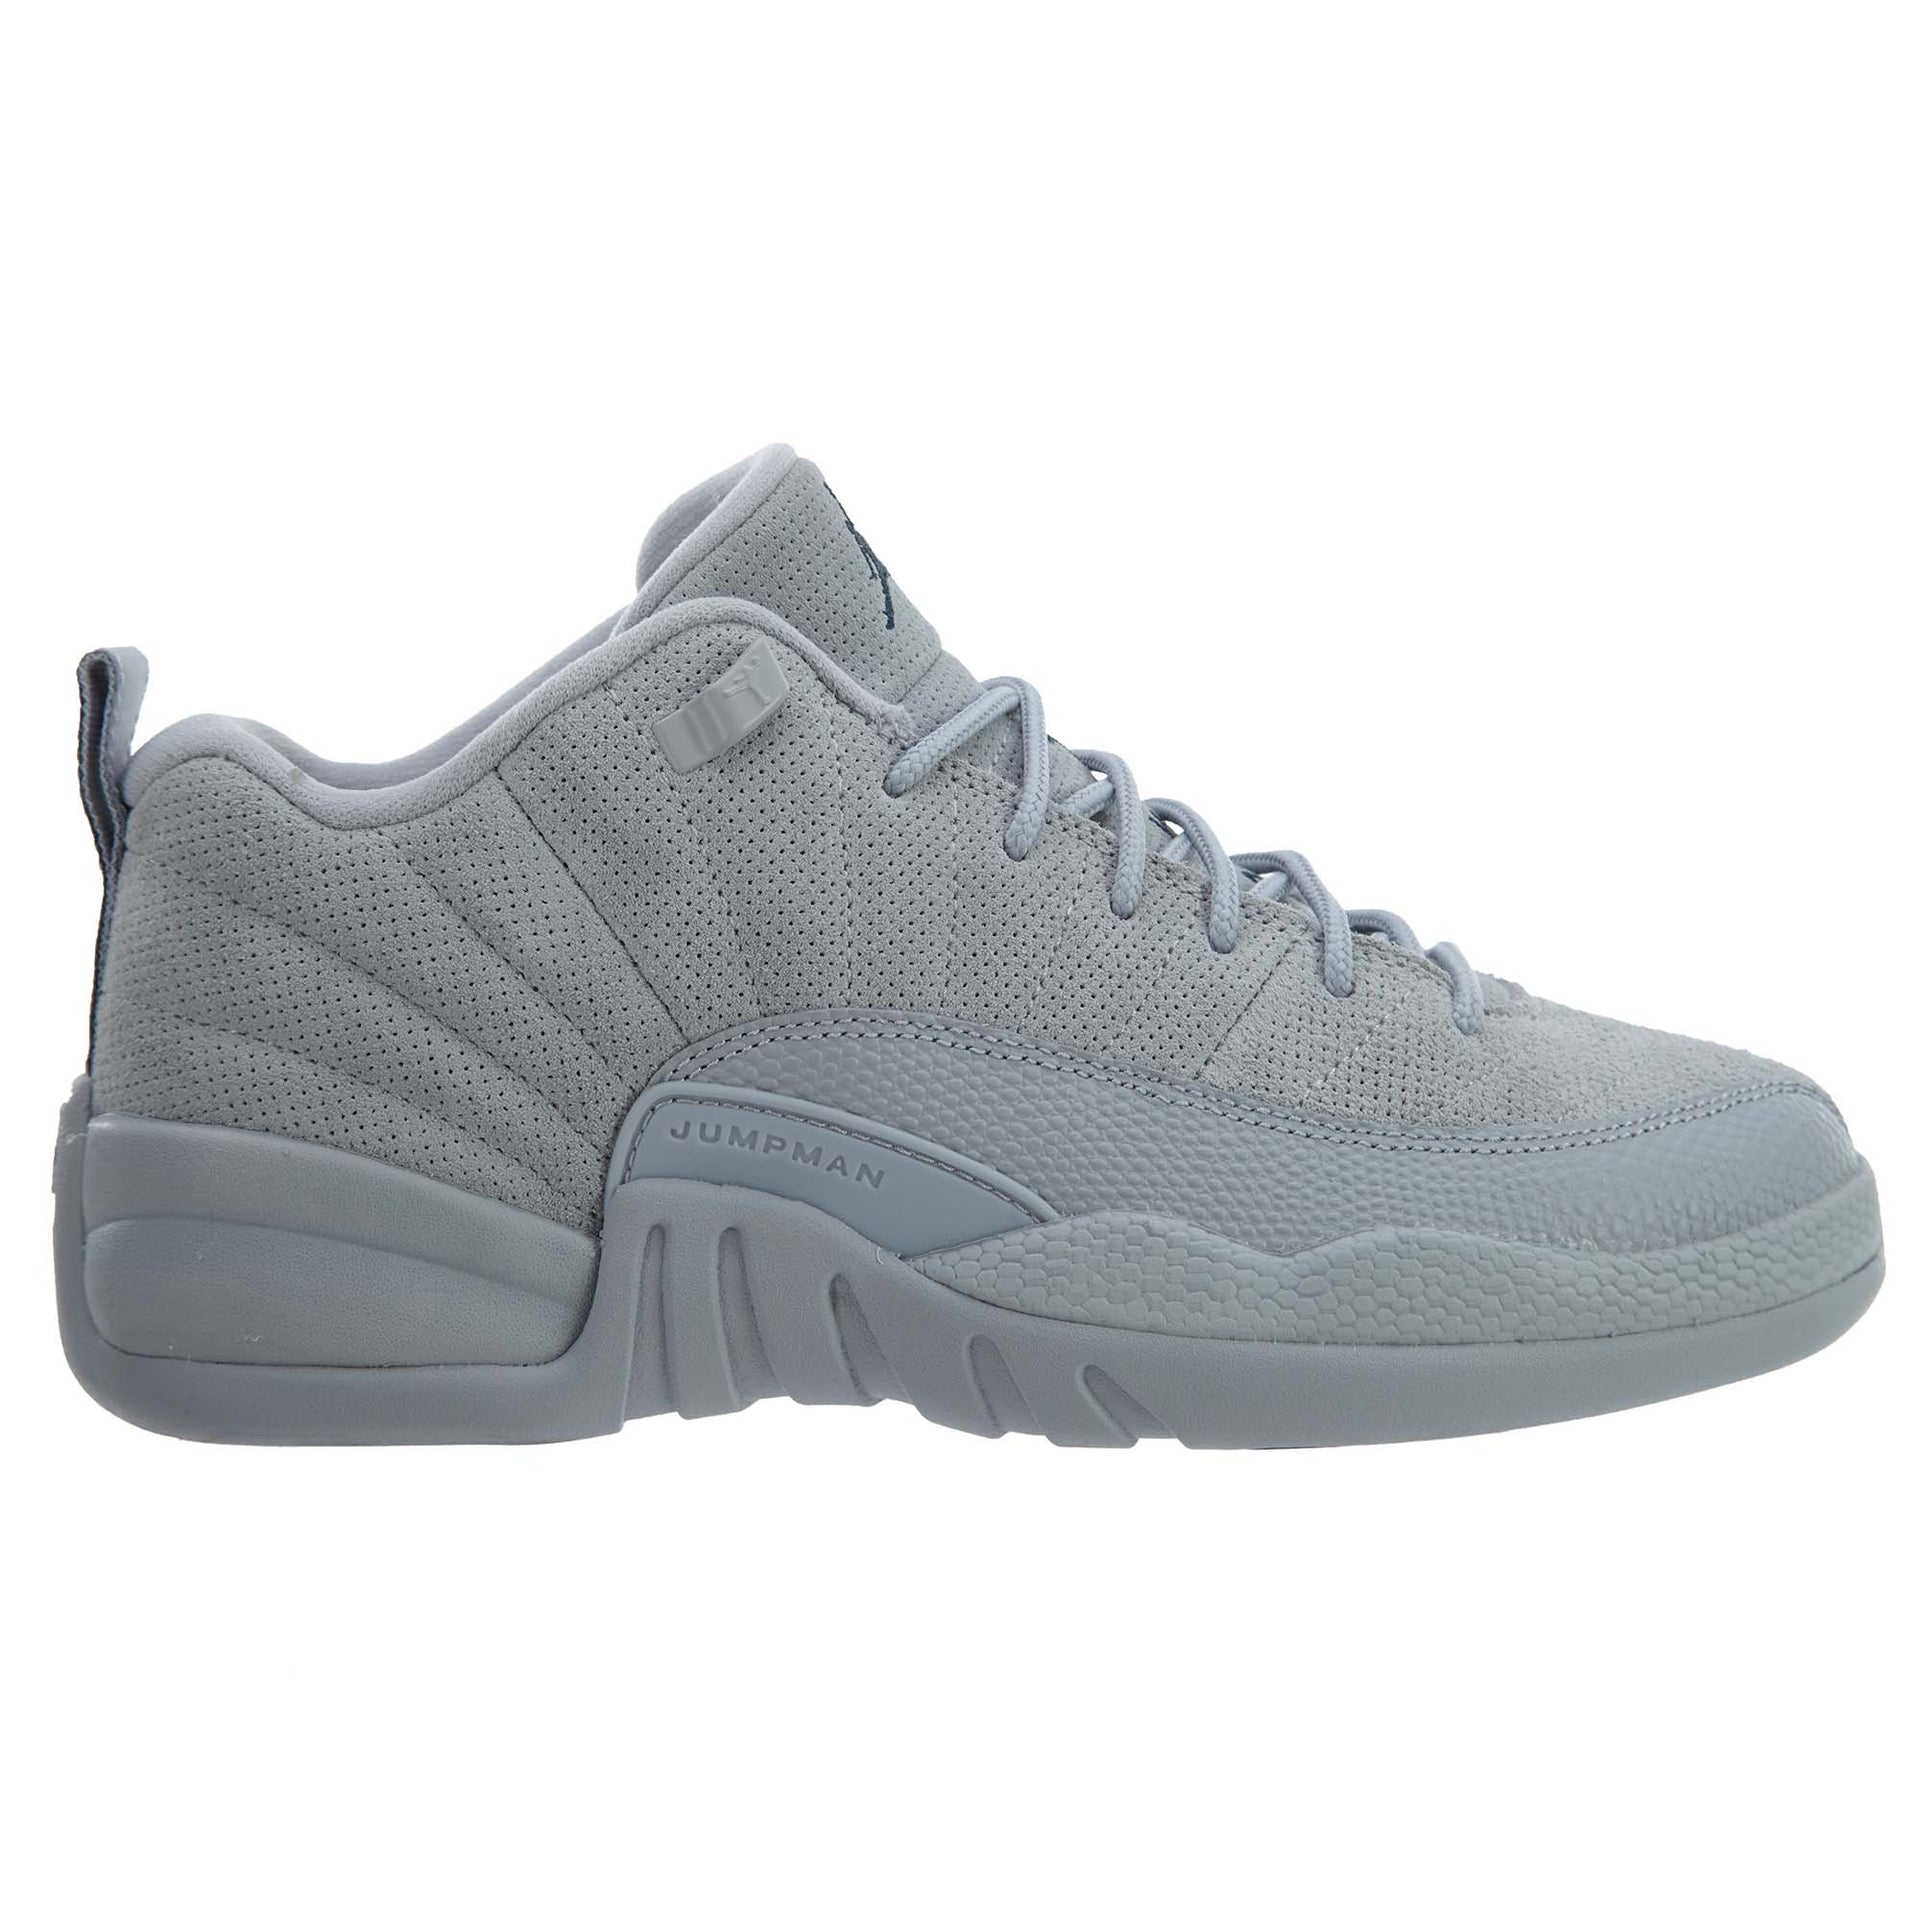 Air Jordan 12 Retro Low Sneakers Boys / Girls Style :308305